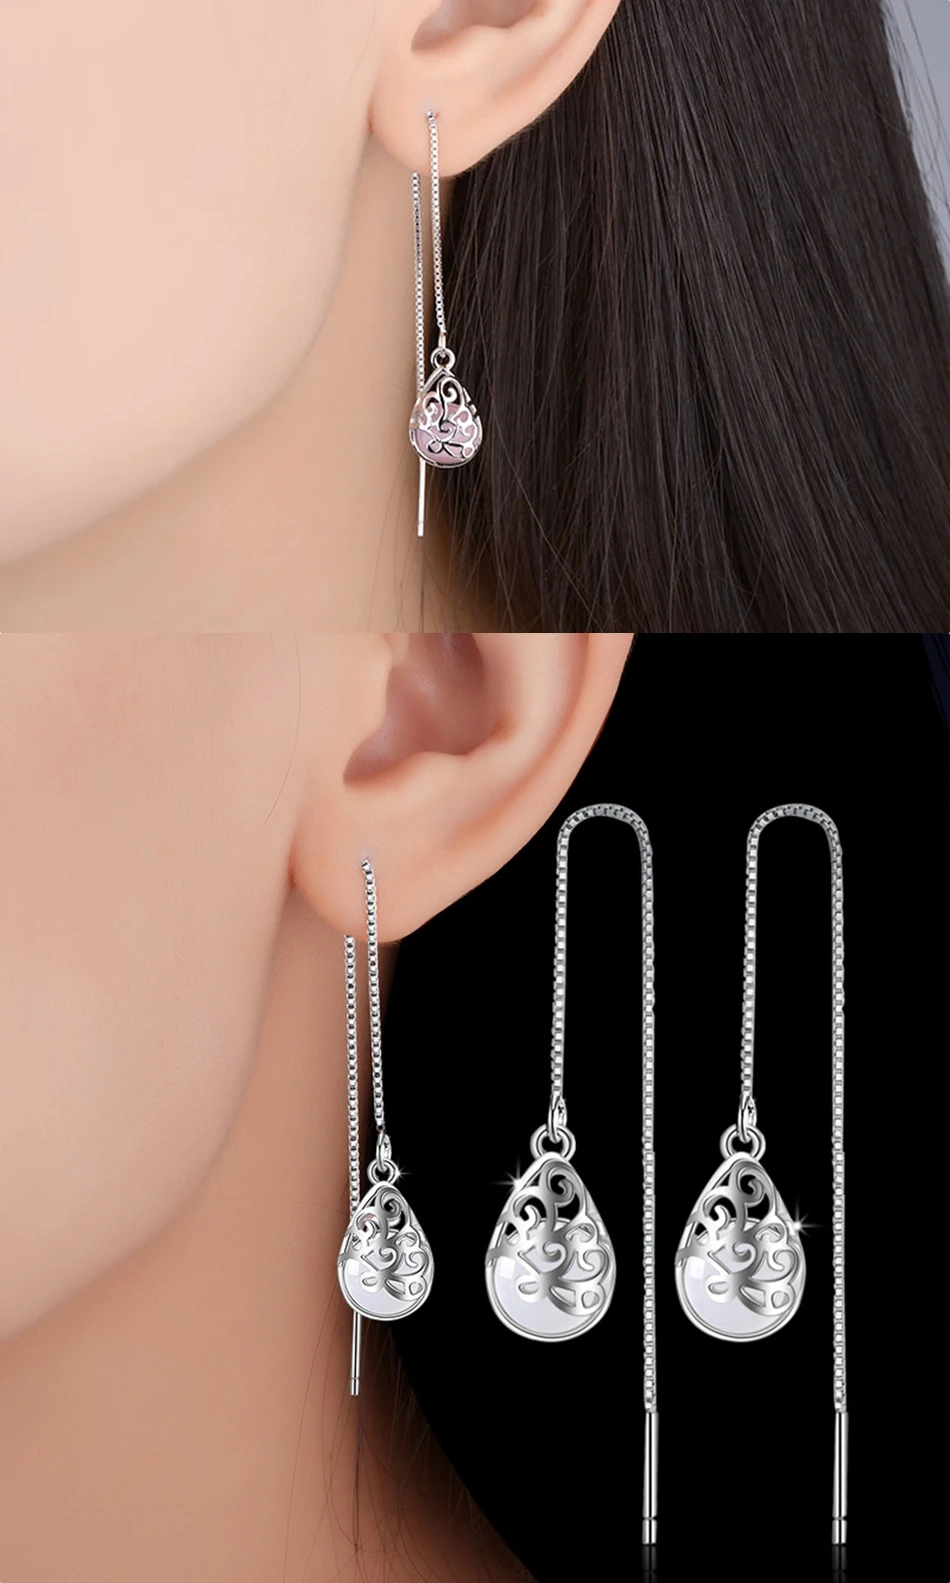 Chic Women Crystal Cube Pendant Earrings Long Tassel Ear Drop Jewelry Ornament